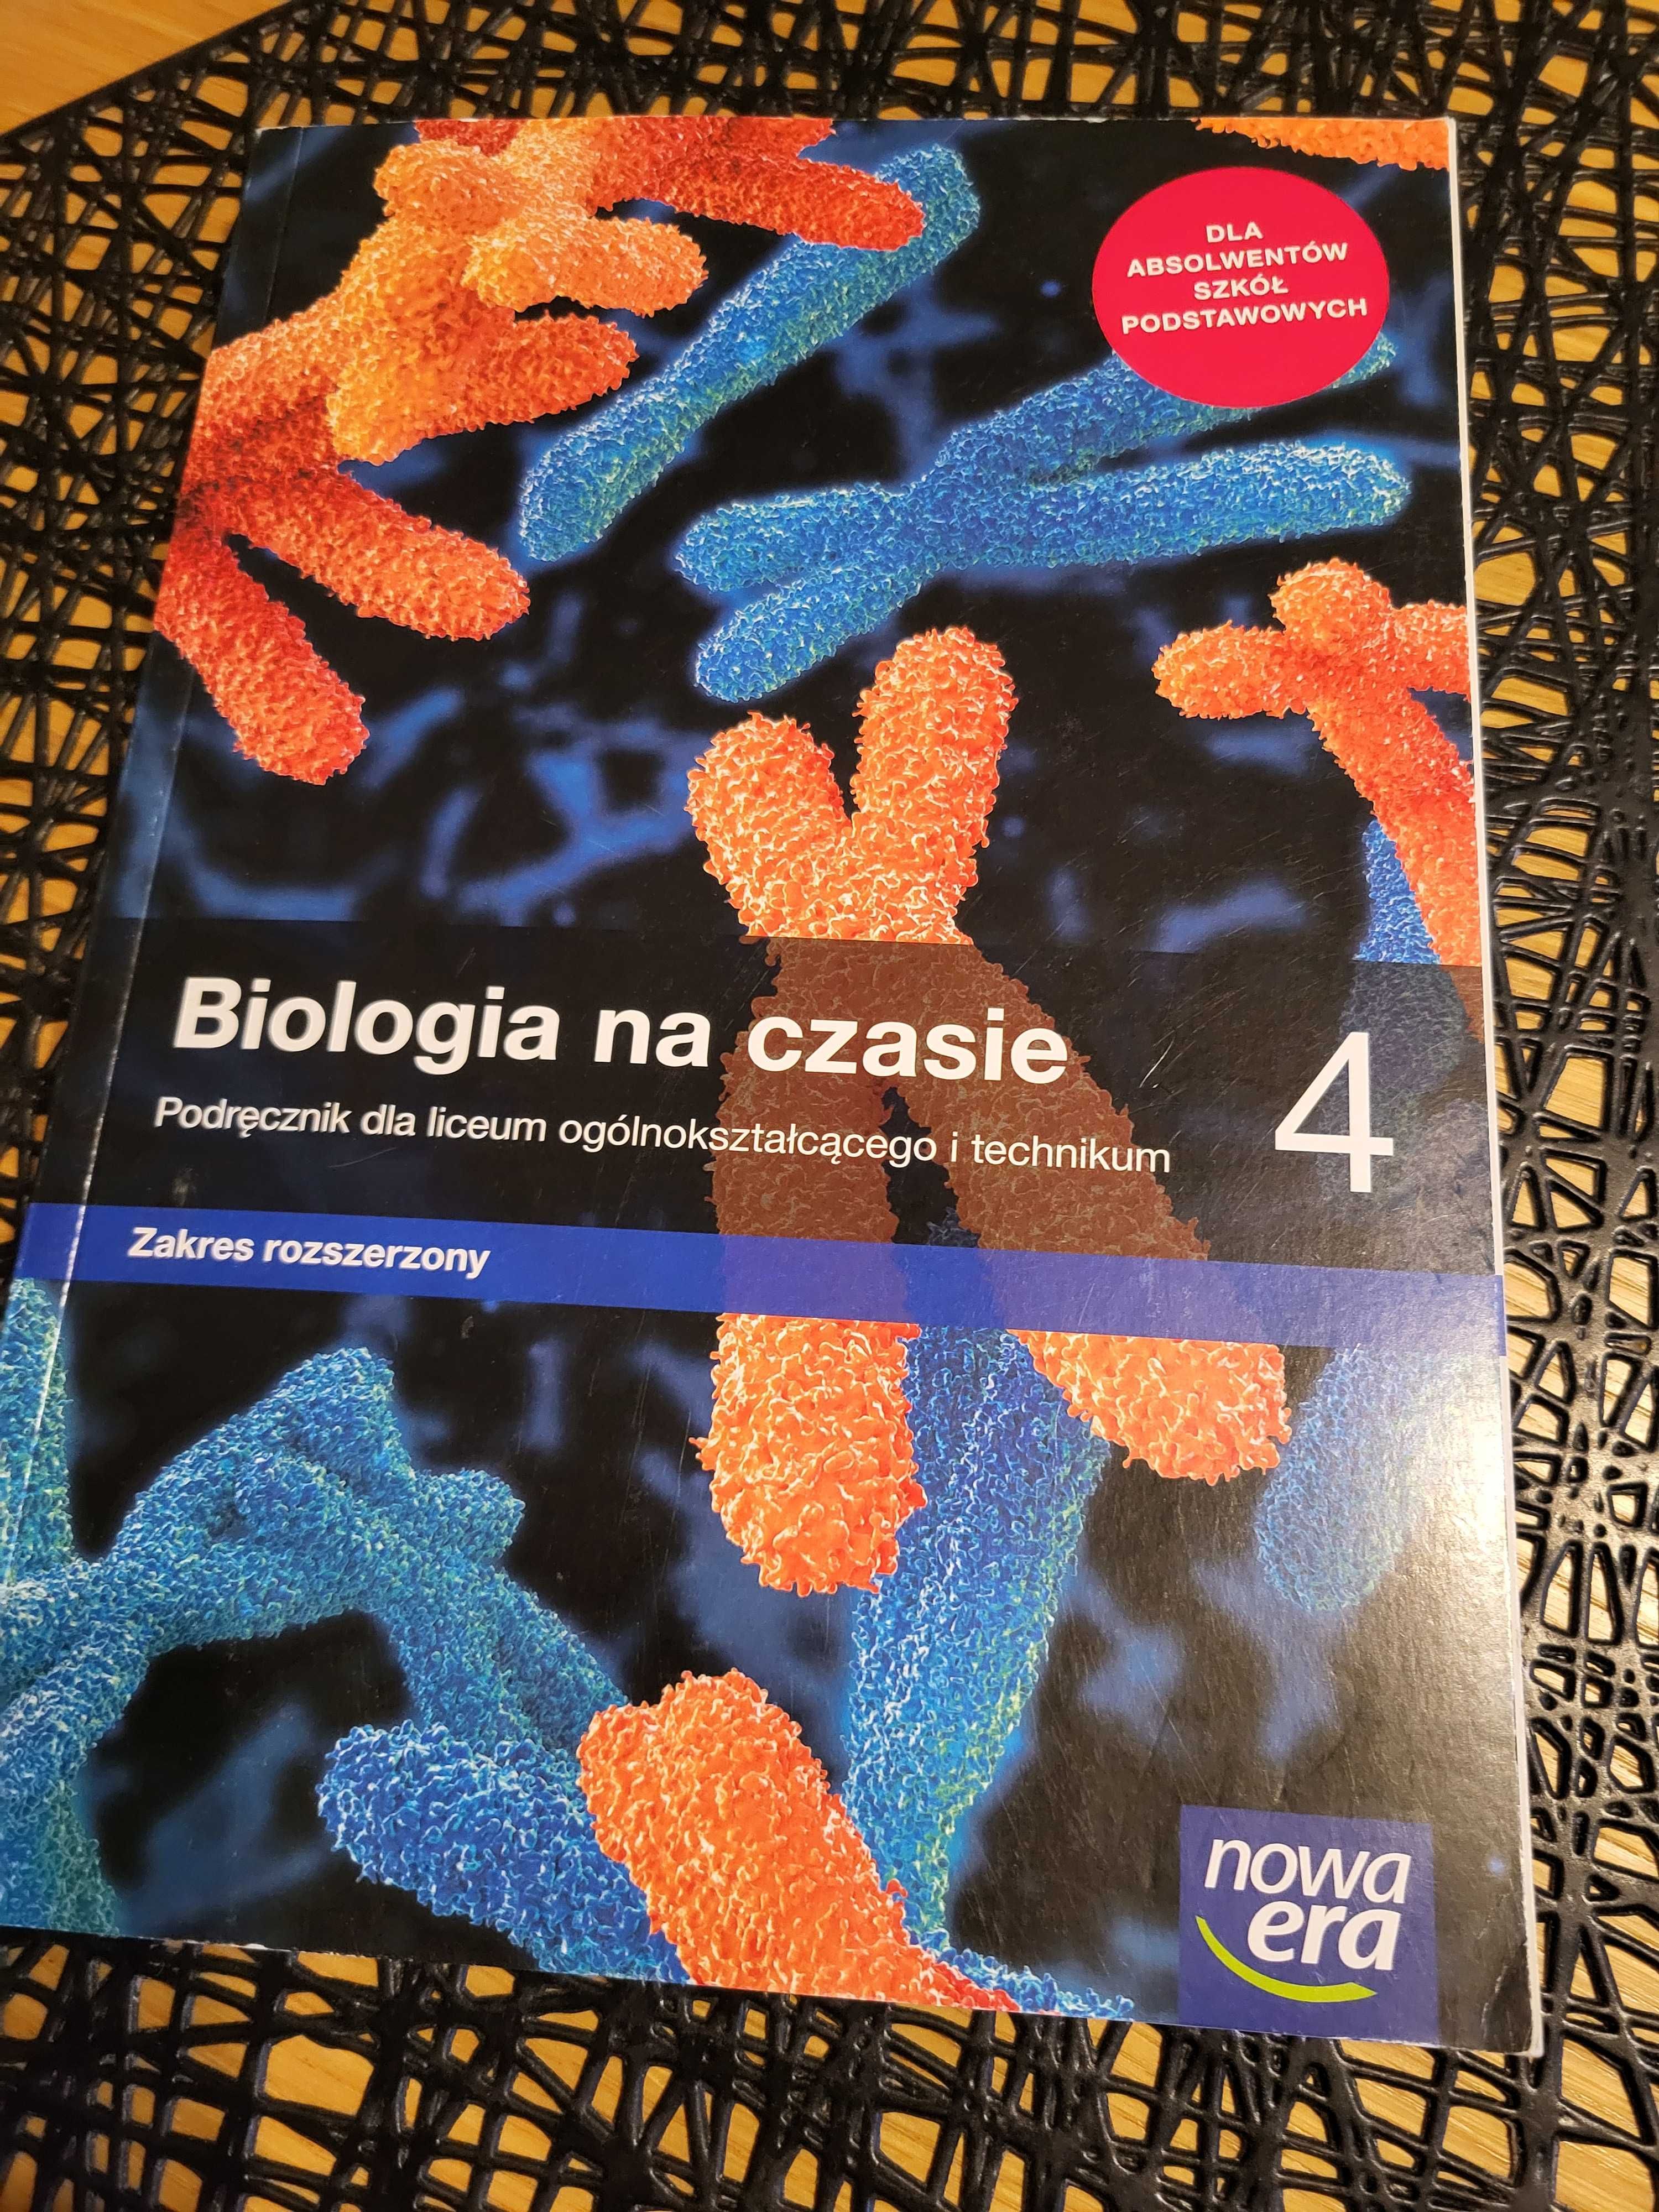 Biologia na czasie 4 podręcznik Nowa Era